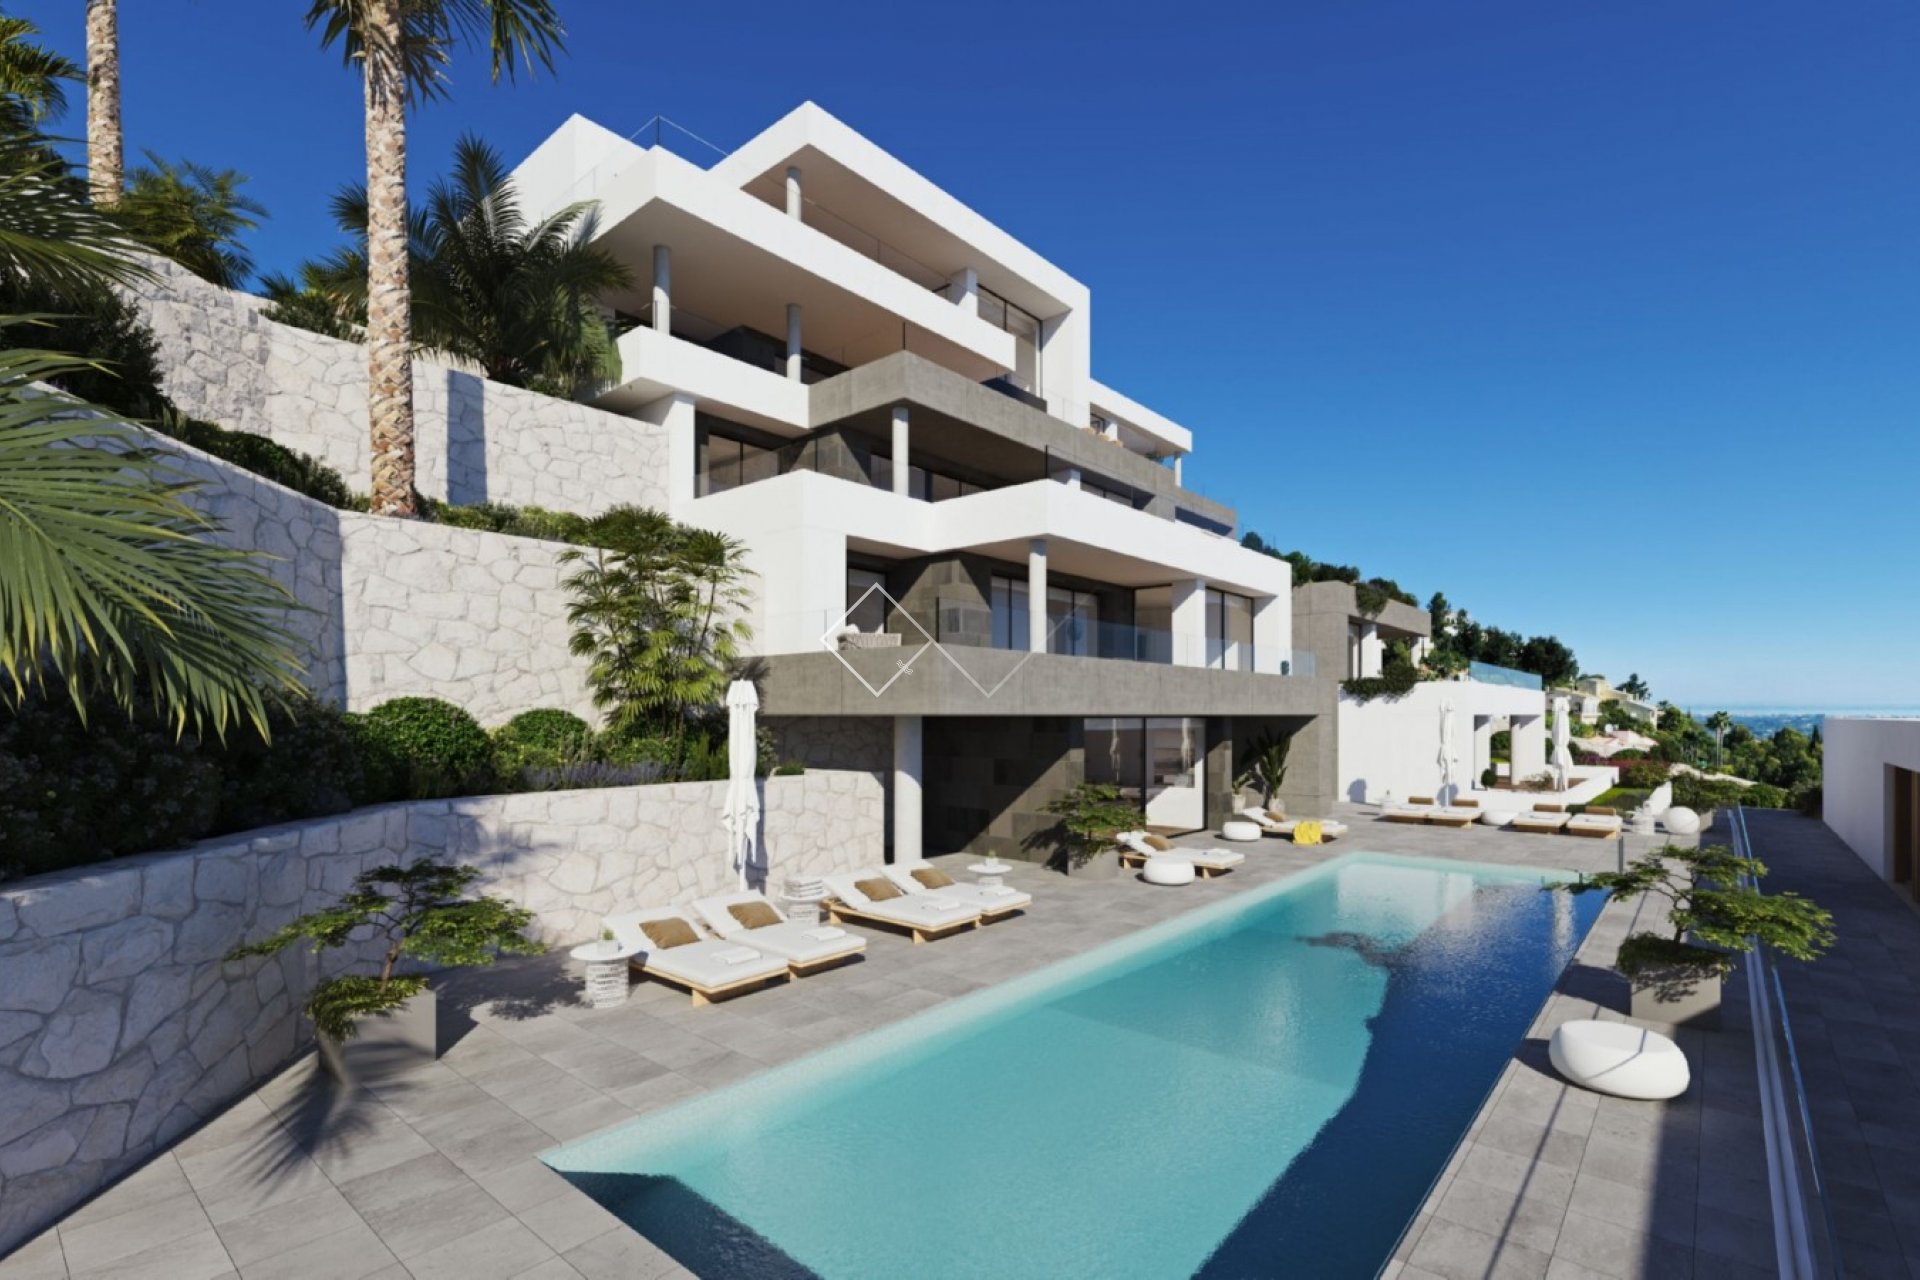 gemeenschappelijk zwembad - Nieuwbouw luxe 3 bed appartementen op La Sella Golf